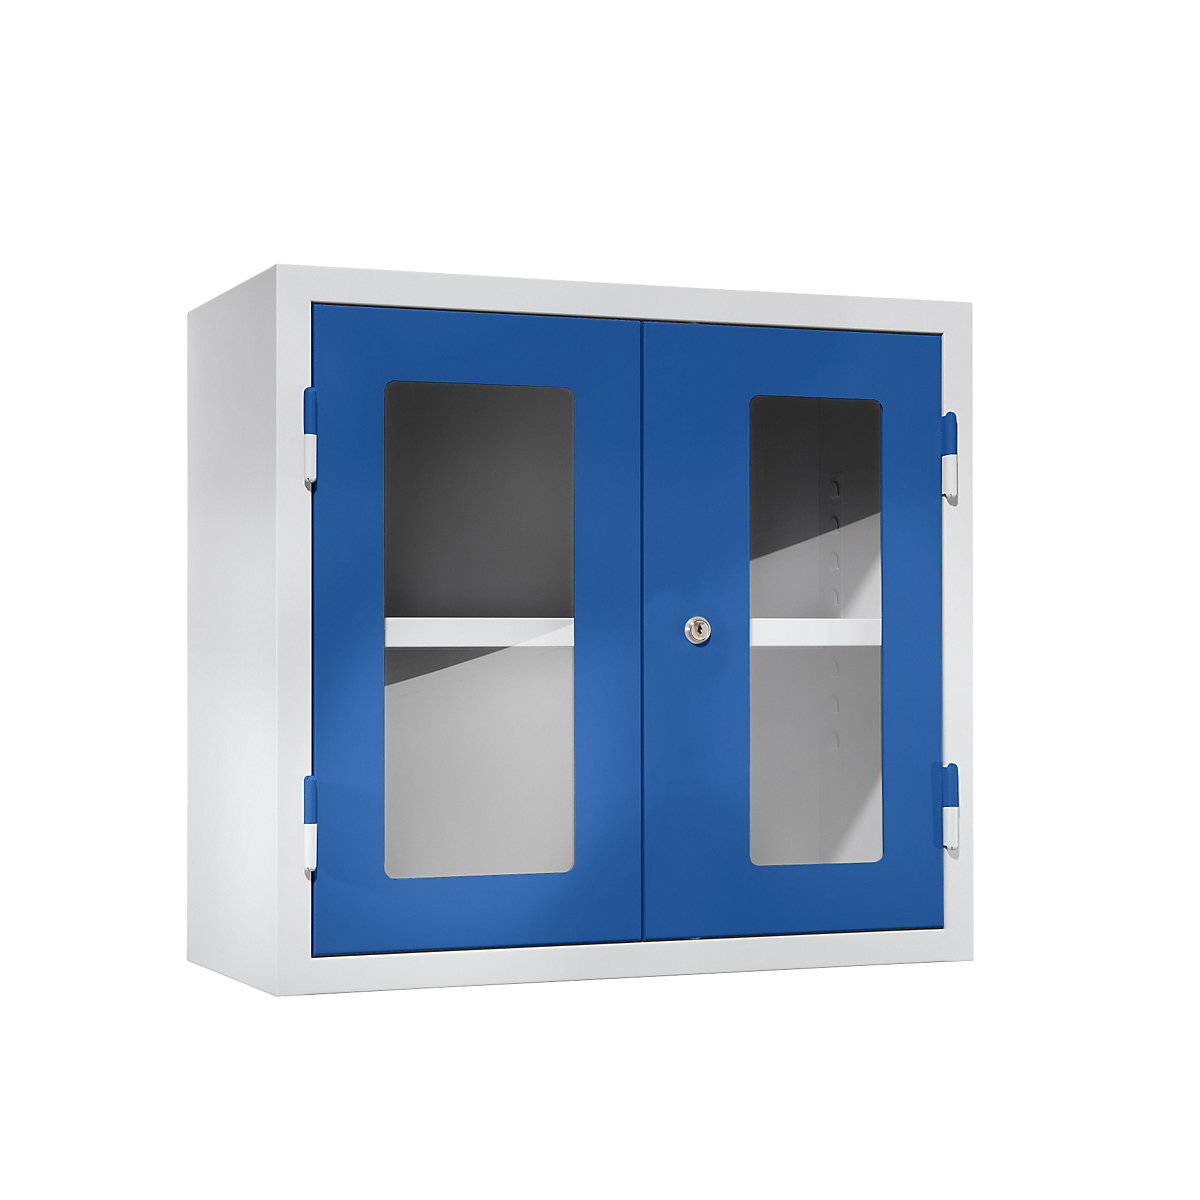 Wisząca szafka warsztatowa – eurokraft basic, wys. x szer. x głęb. 600 x 650 x 320 mm, drzwi z okienkiem, niebieski gencjanowy, RAL 5010-13